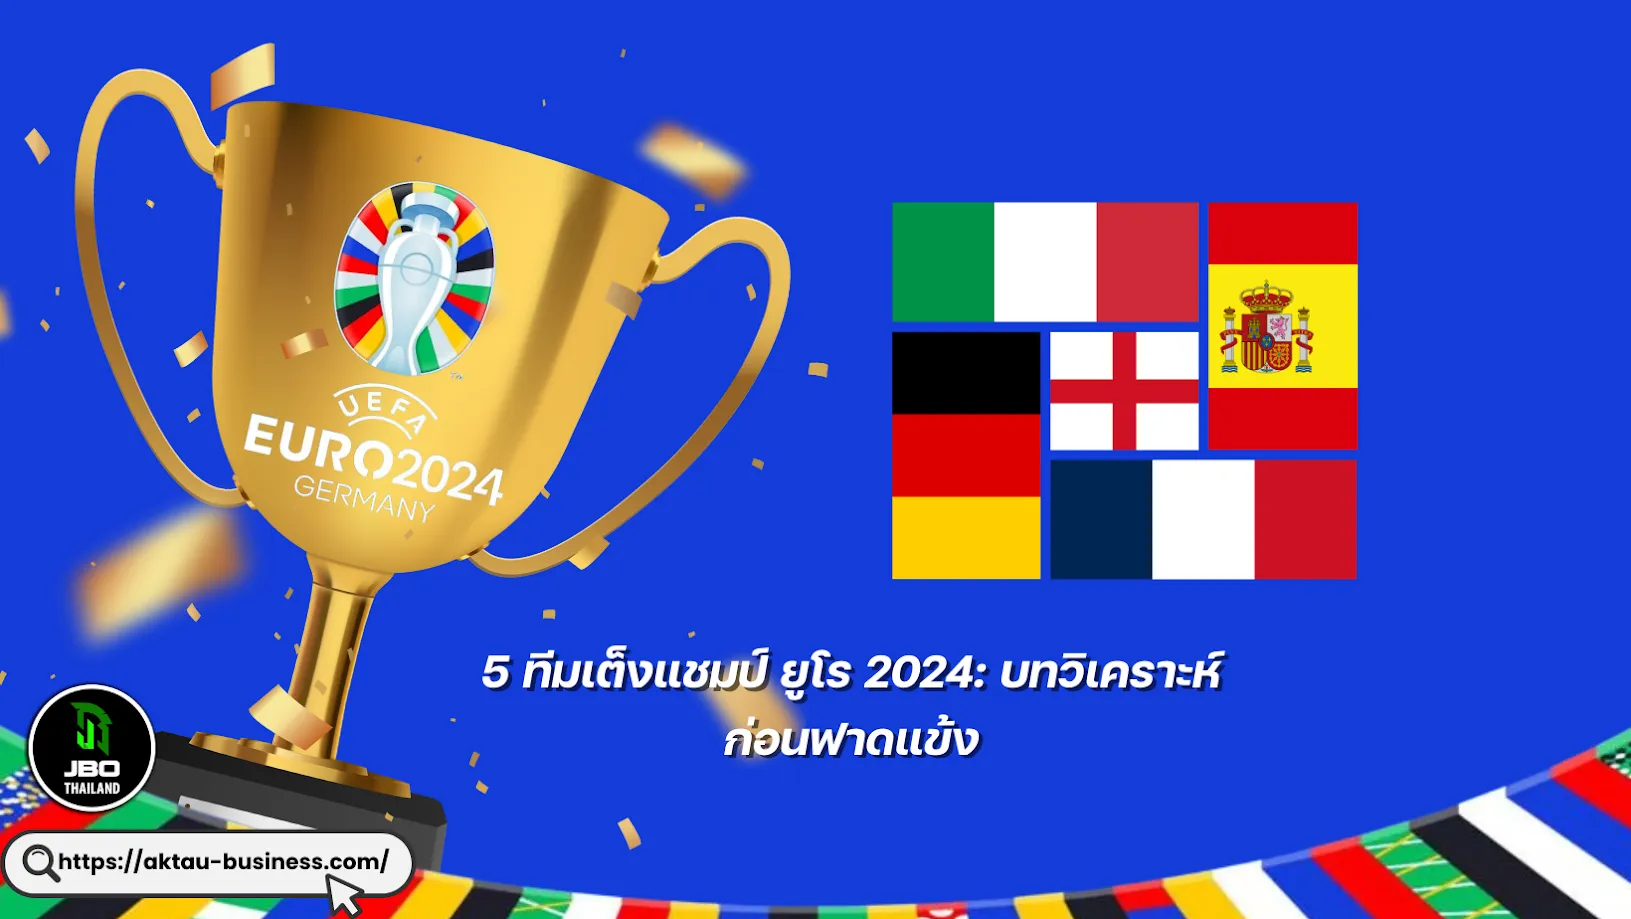 5 ทีมเต็งแชมป์ ยูโร 2024: บทวิเคราะห์ก่อนฟาดแข้ง